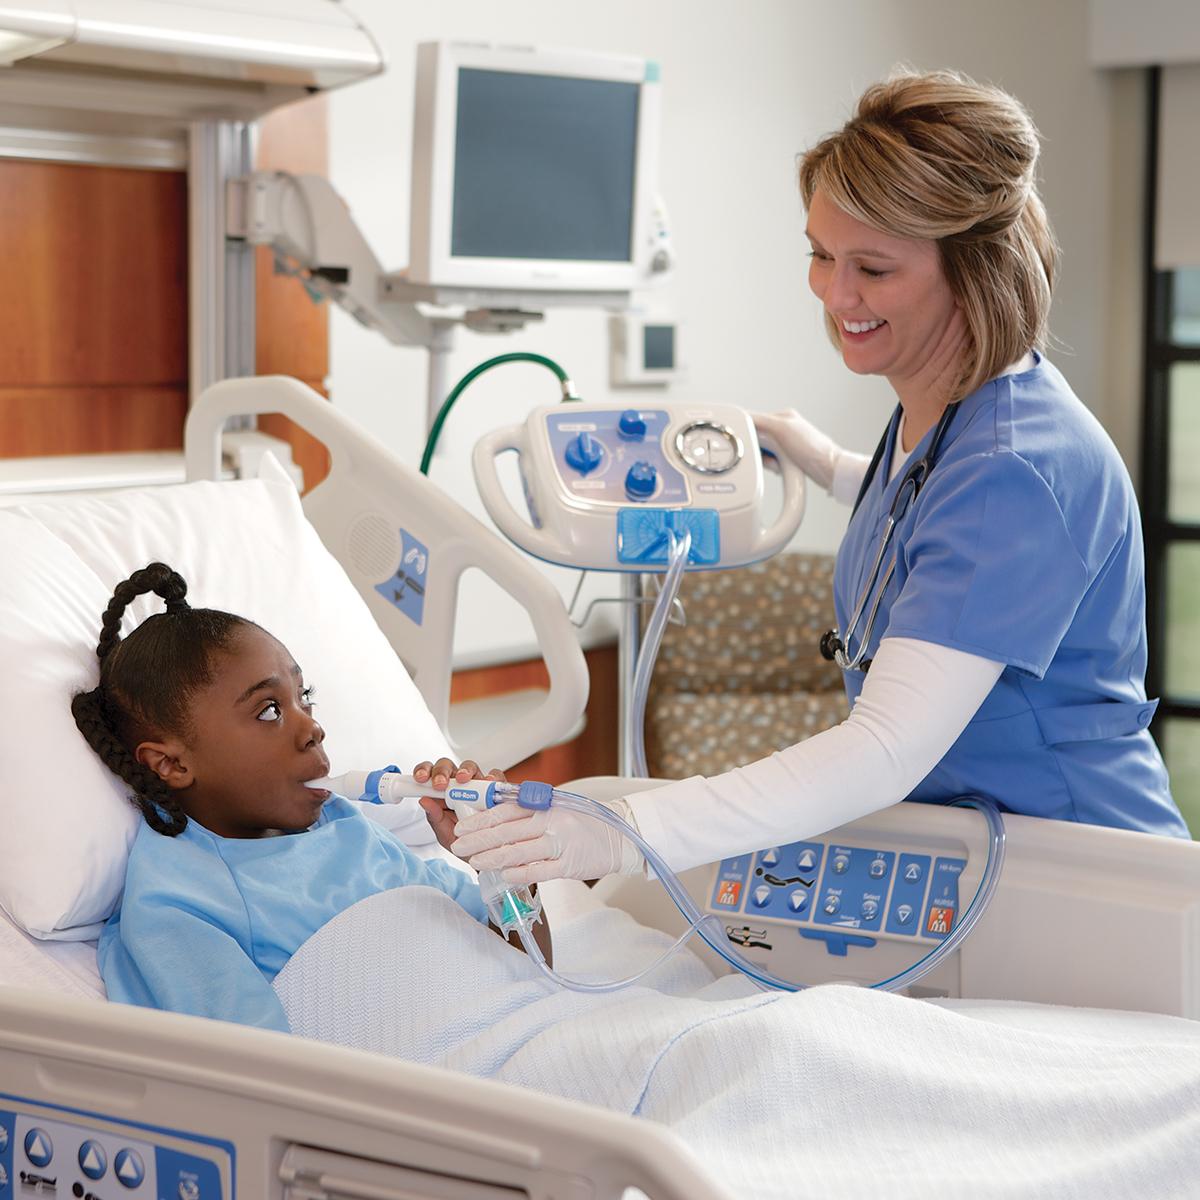 Uma jovem paciente em uma cama hospitalar recebe terapia do sistema MetaNeb, com a ajuda do médico